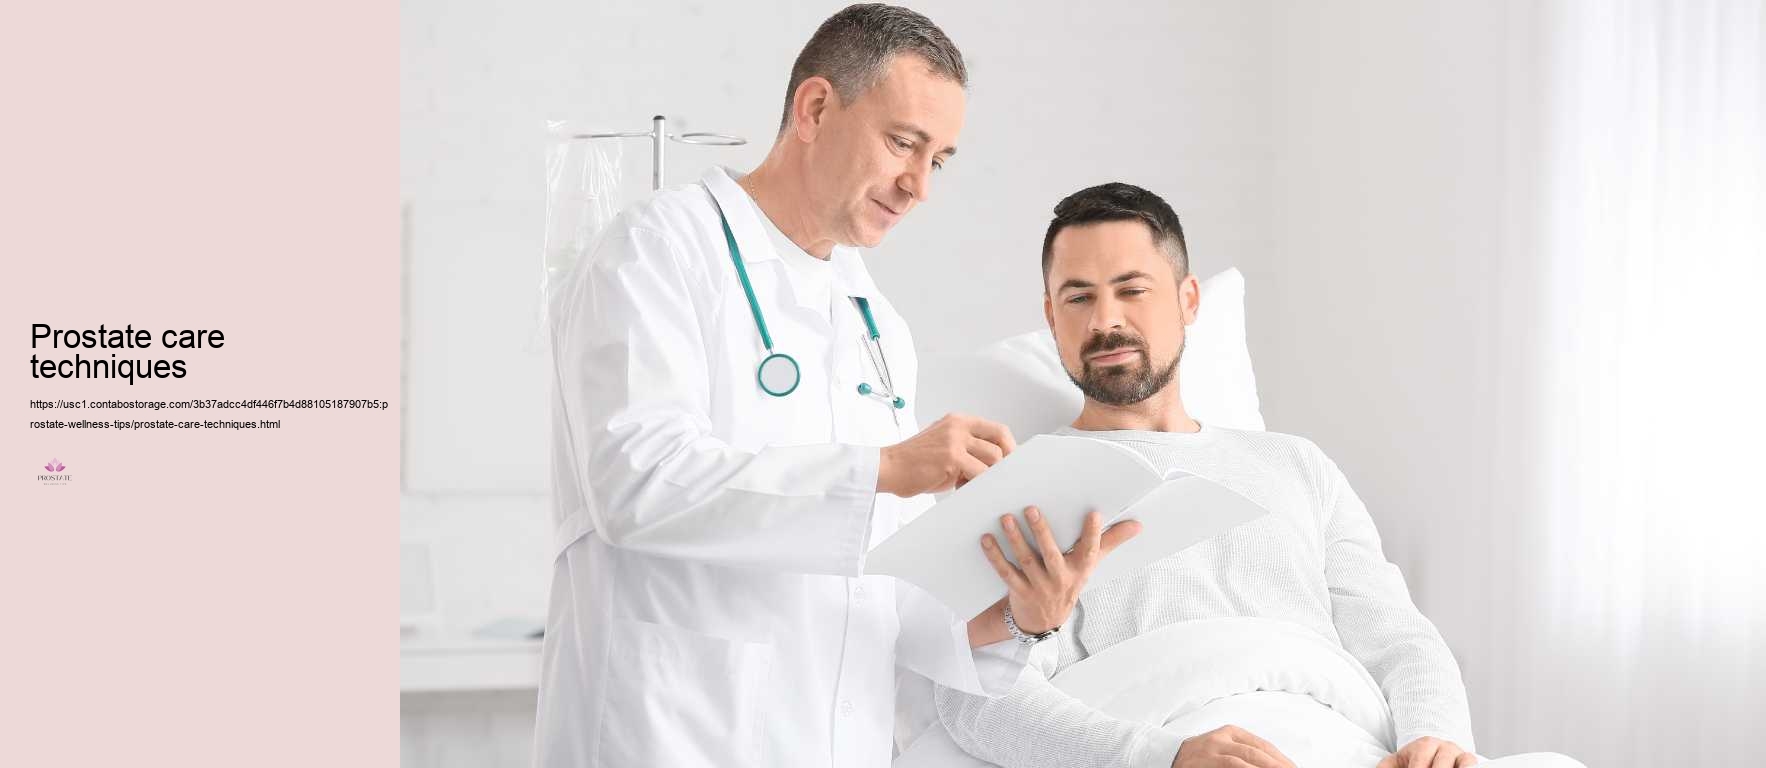 Prostate care techniques